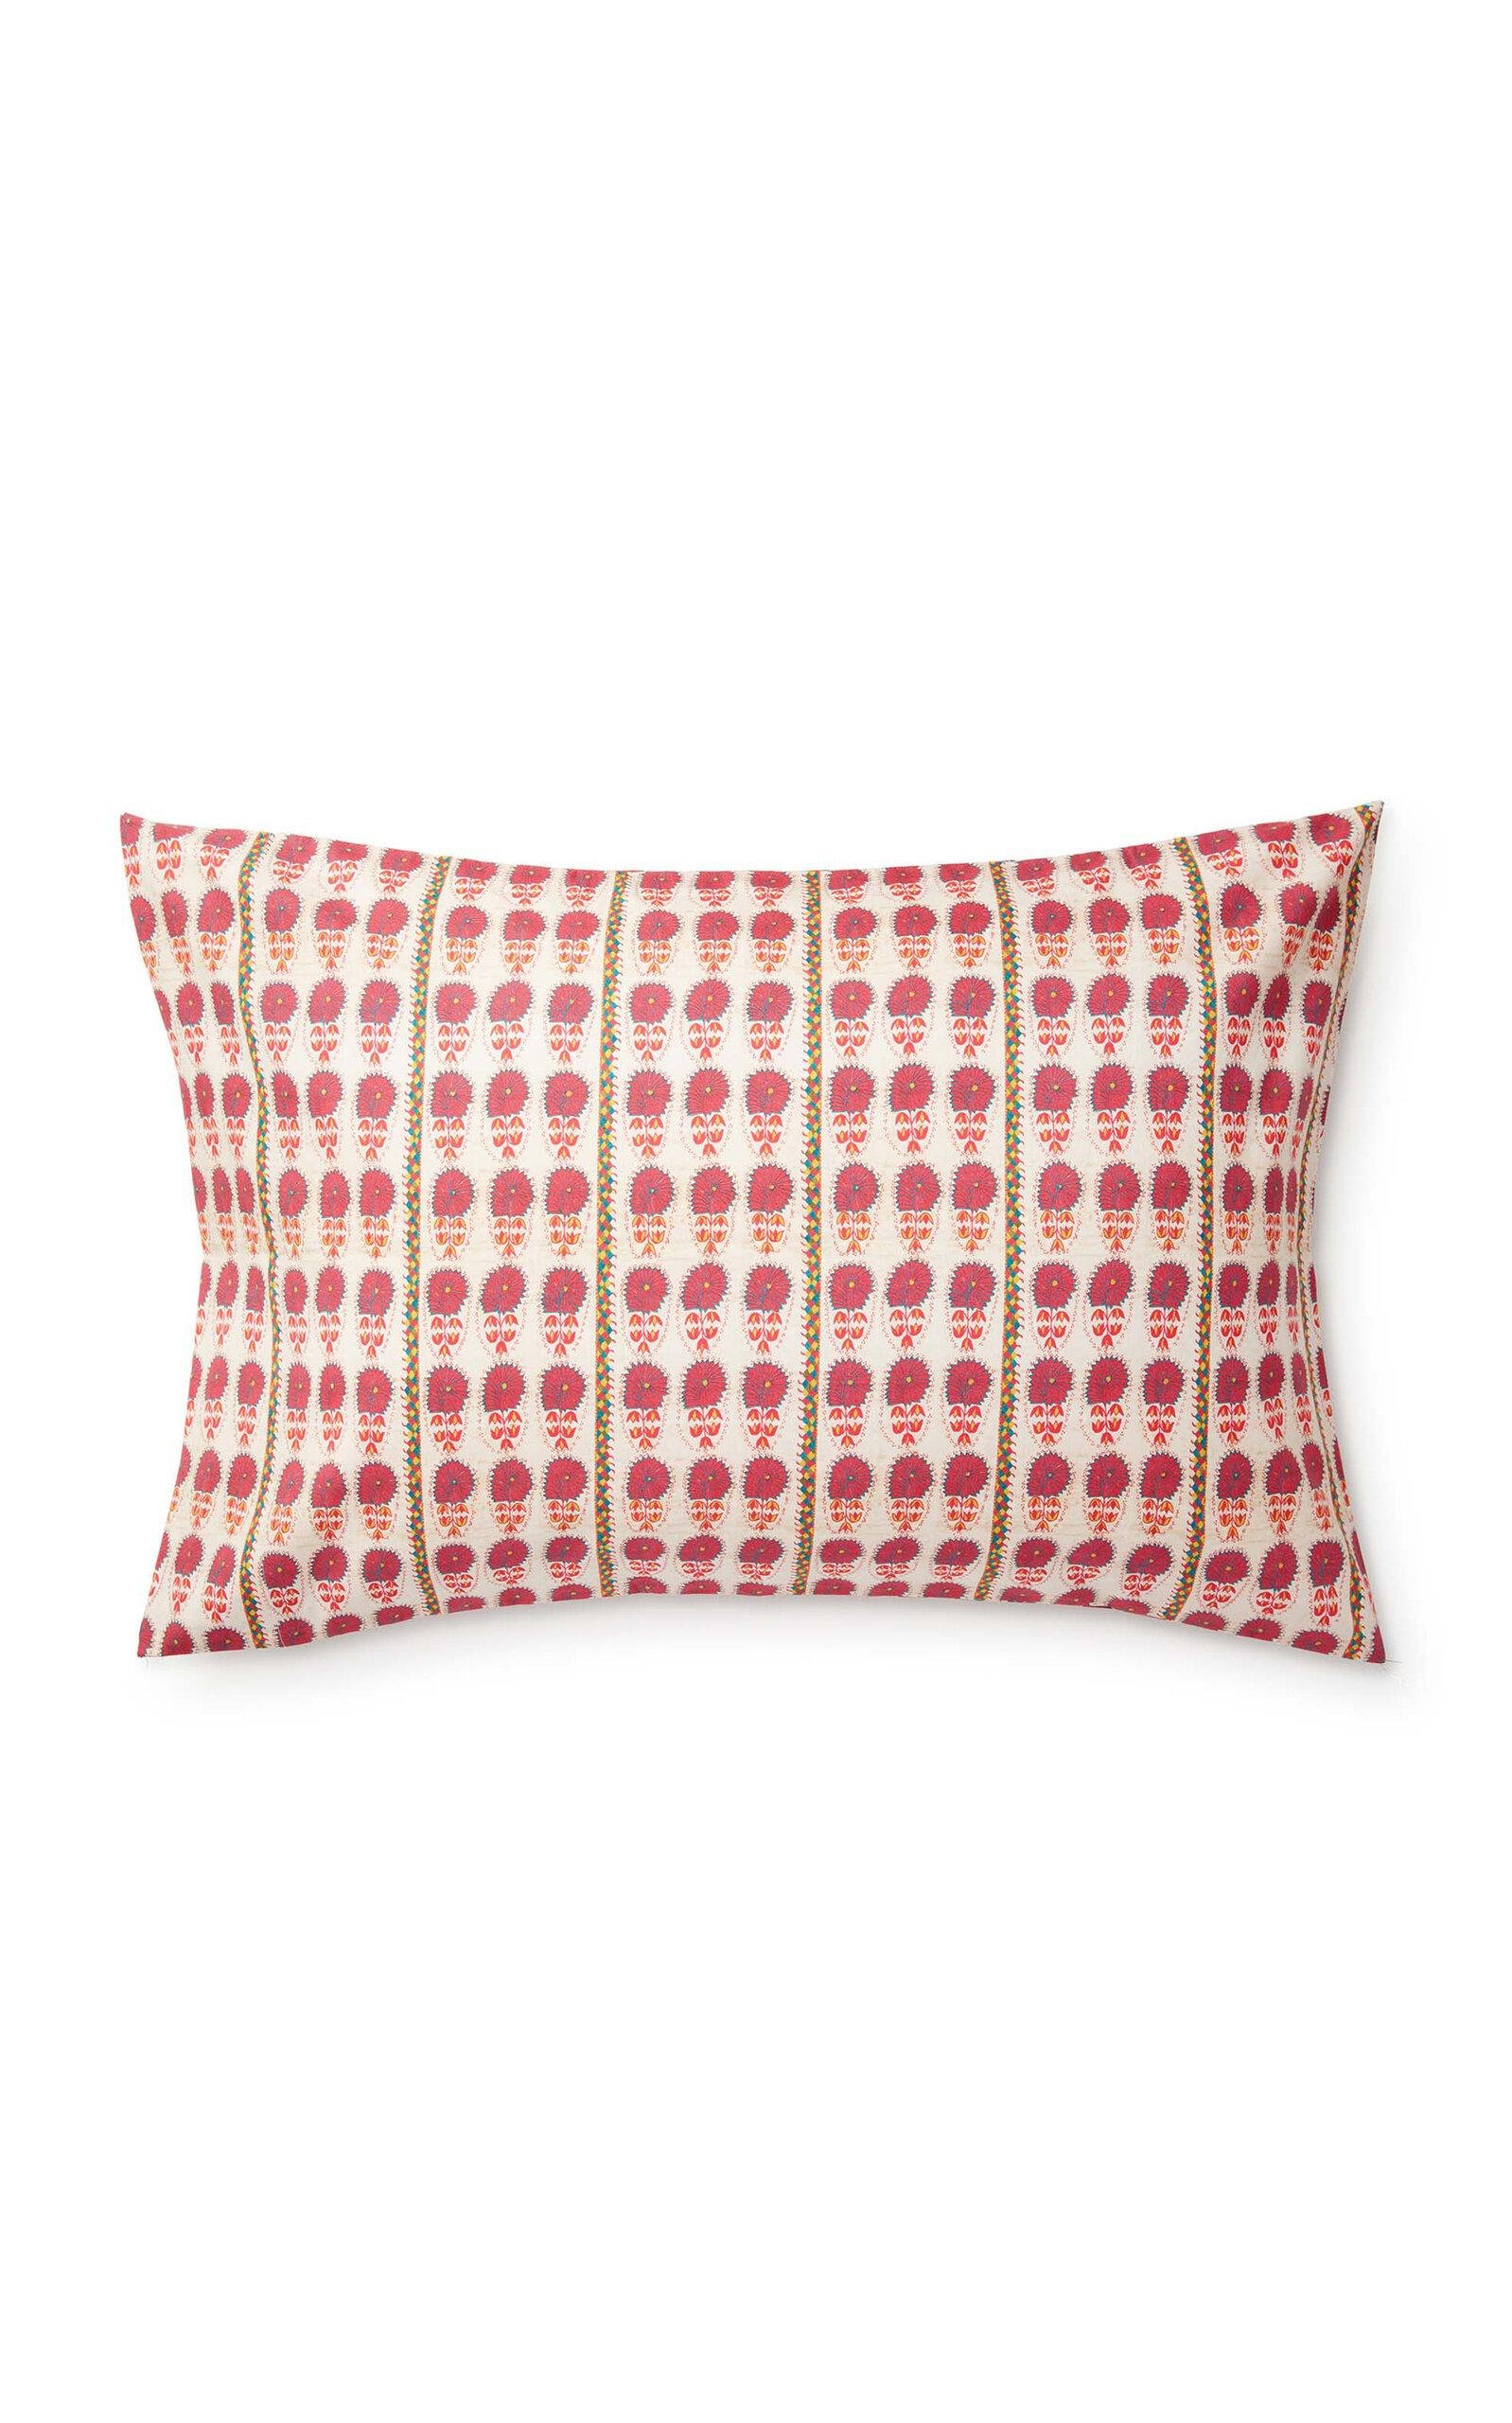 St. Frank - Suzani Daisy Cotton Standard Pillowcase Set - Pink - Moda Operandi by ST. FRANK